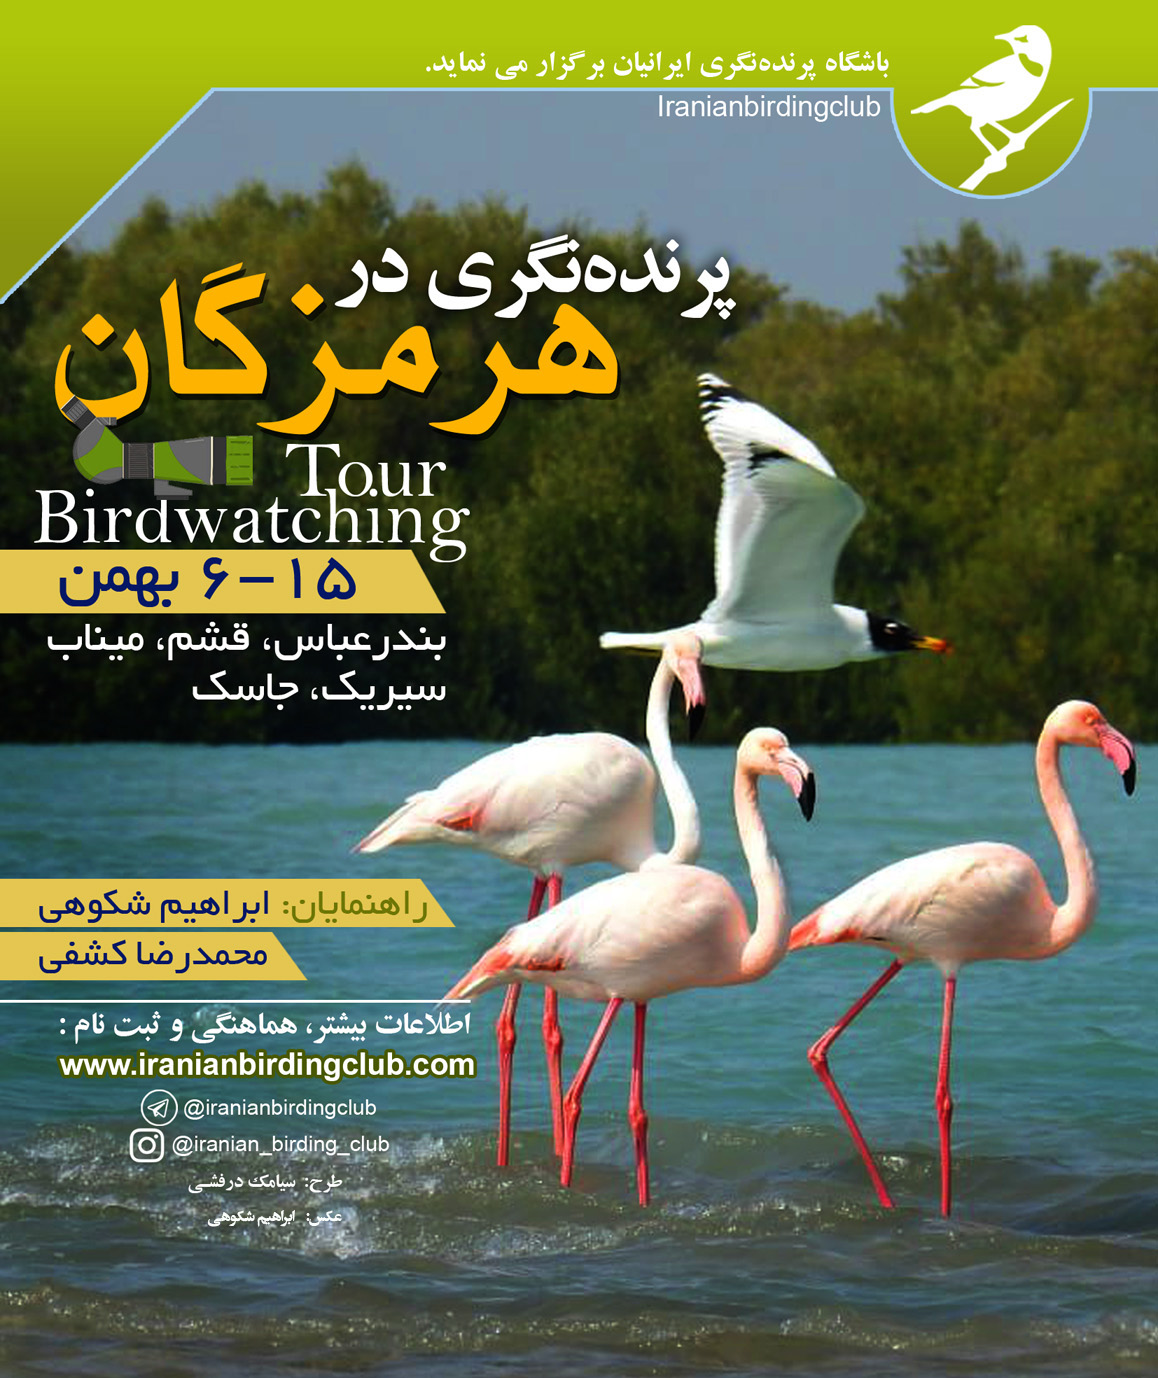 Shokouhi_Persian Gulf_birdwaching_Iranian Birding Club